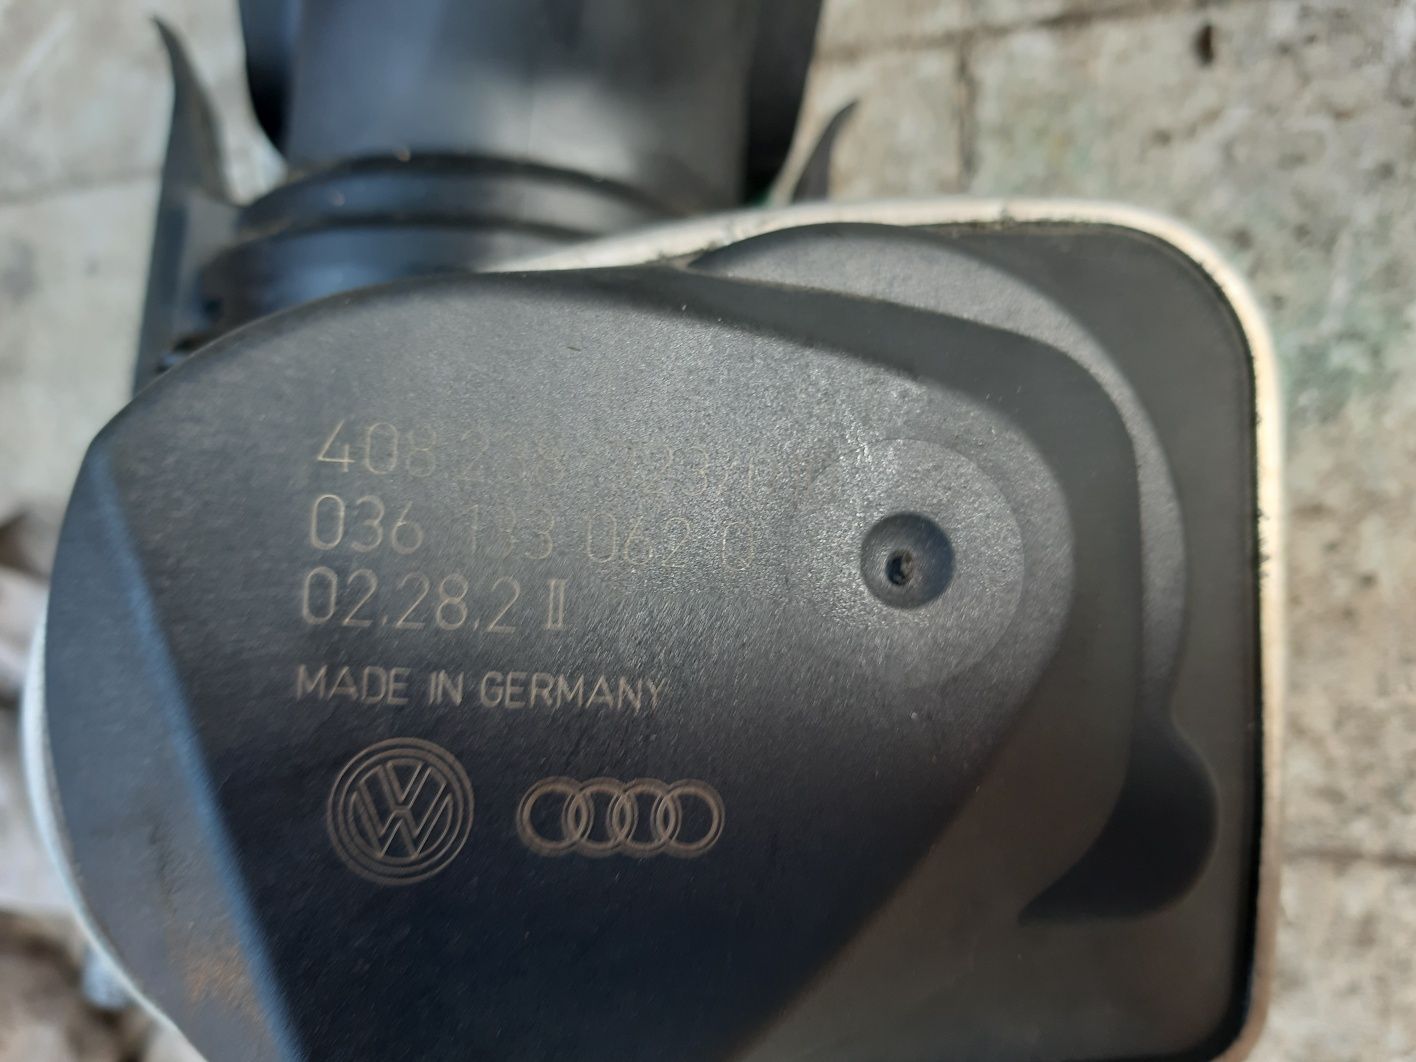 Clapeta accelerație 1.2 tsi VW, Audi,Seat,Skoda cod 036 133 062 Q